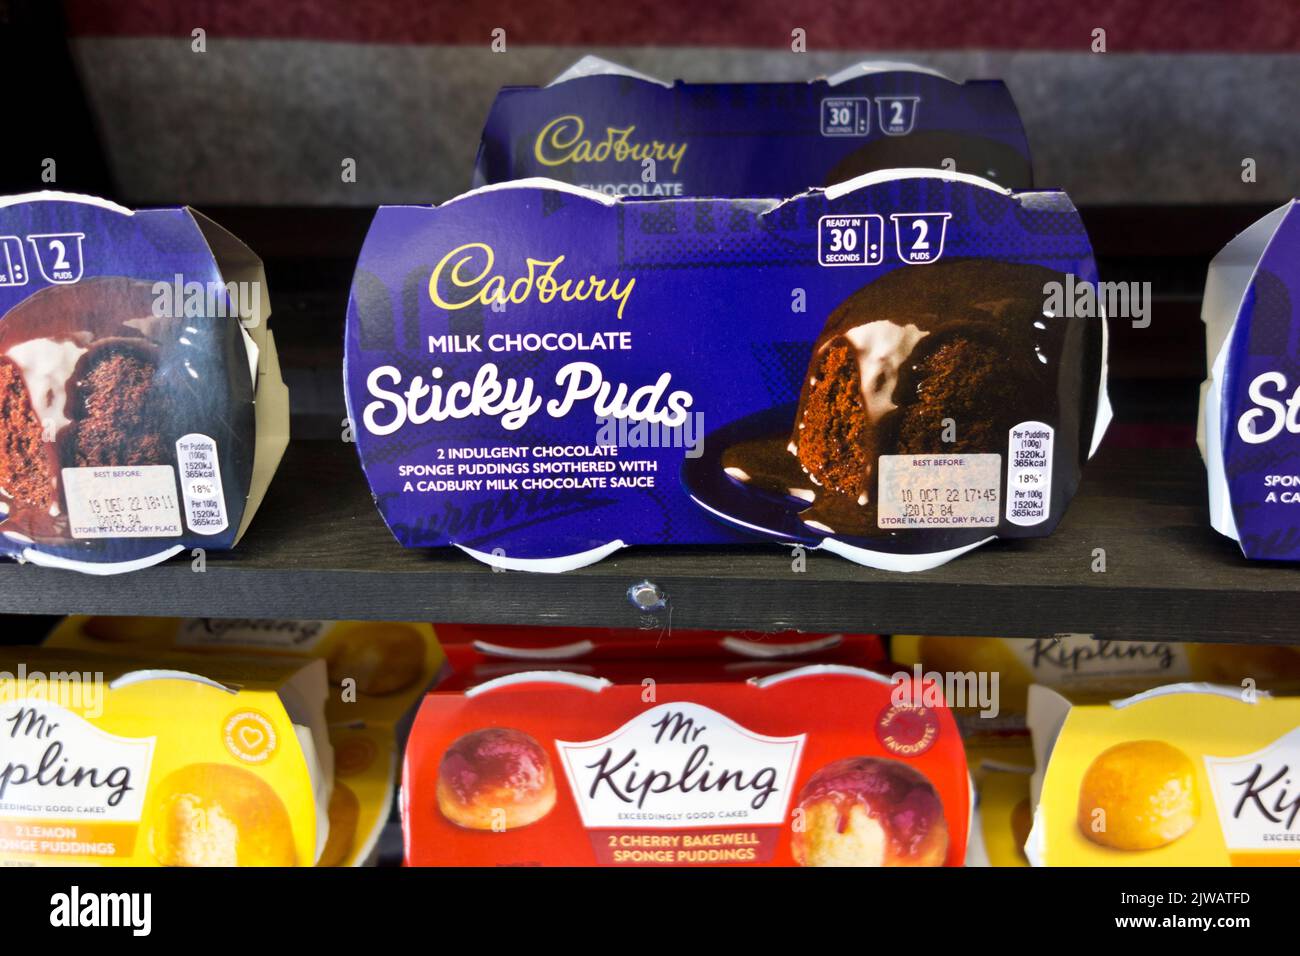 Confezioni di budini adesivi al cioccolato al latte Cadbury e altri budini in spugna. Foto Stock